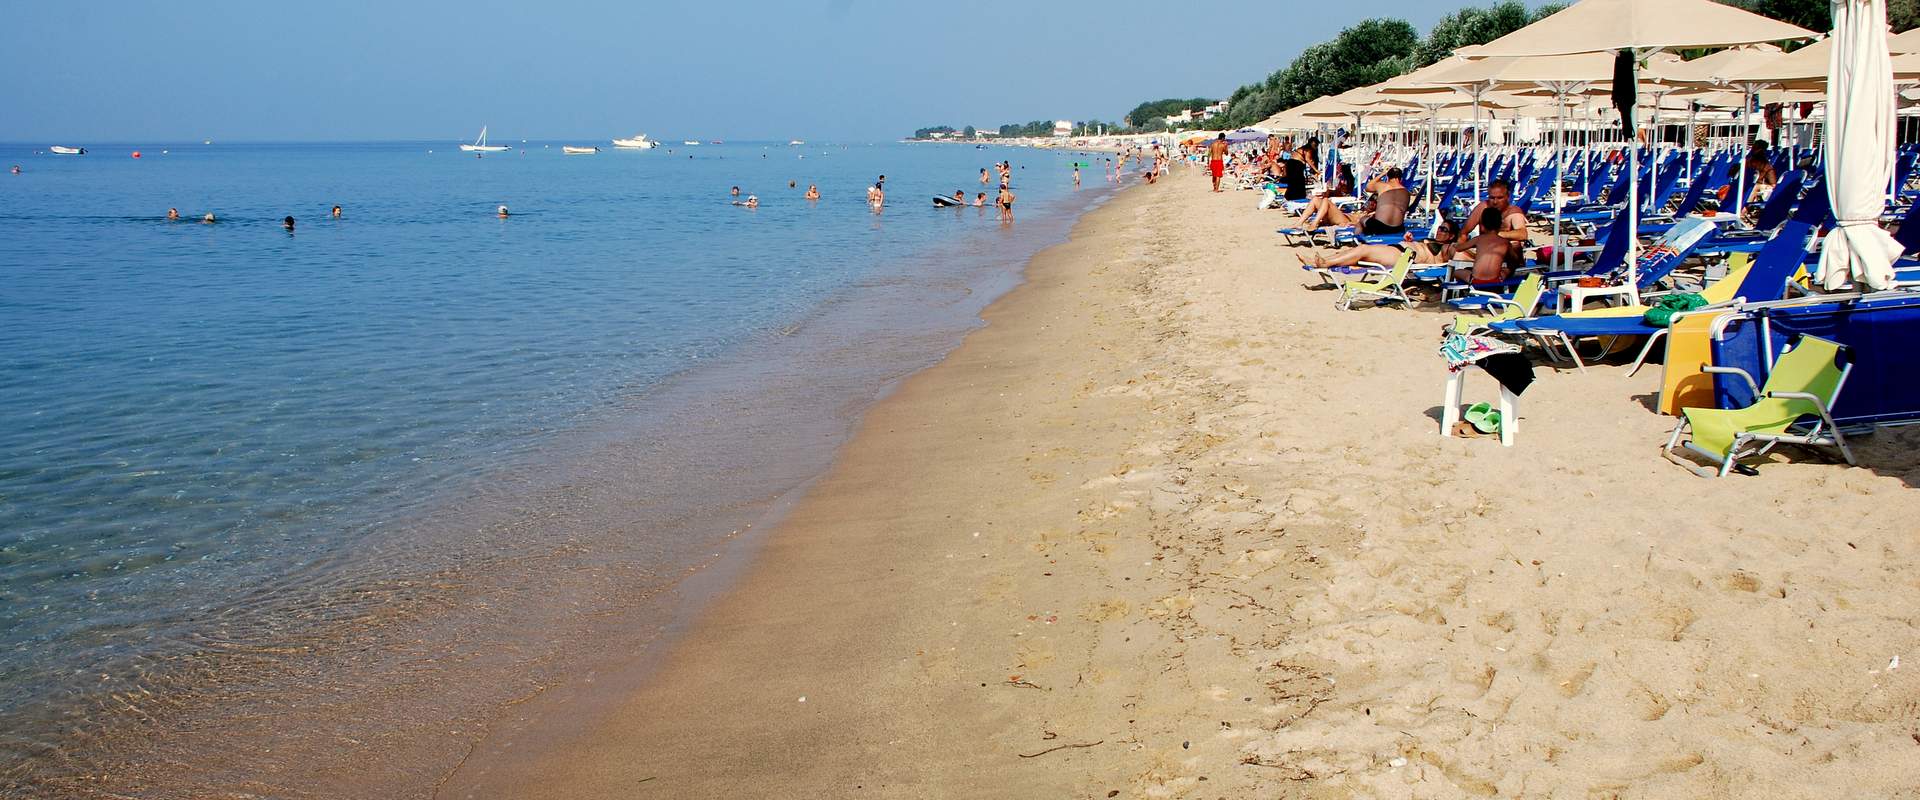 Φλογητά παραλία, Χαλκιδική, Ελλάδα